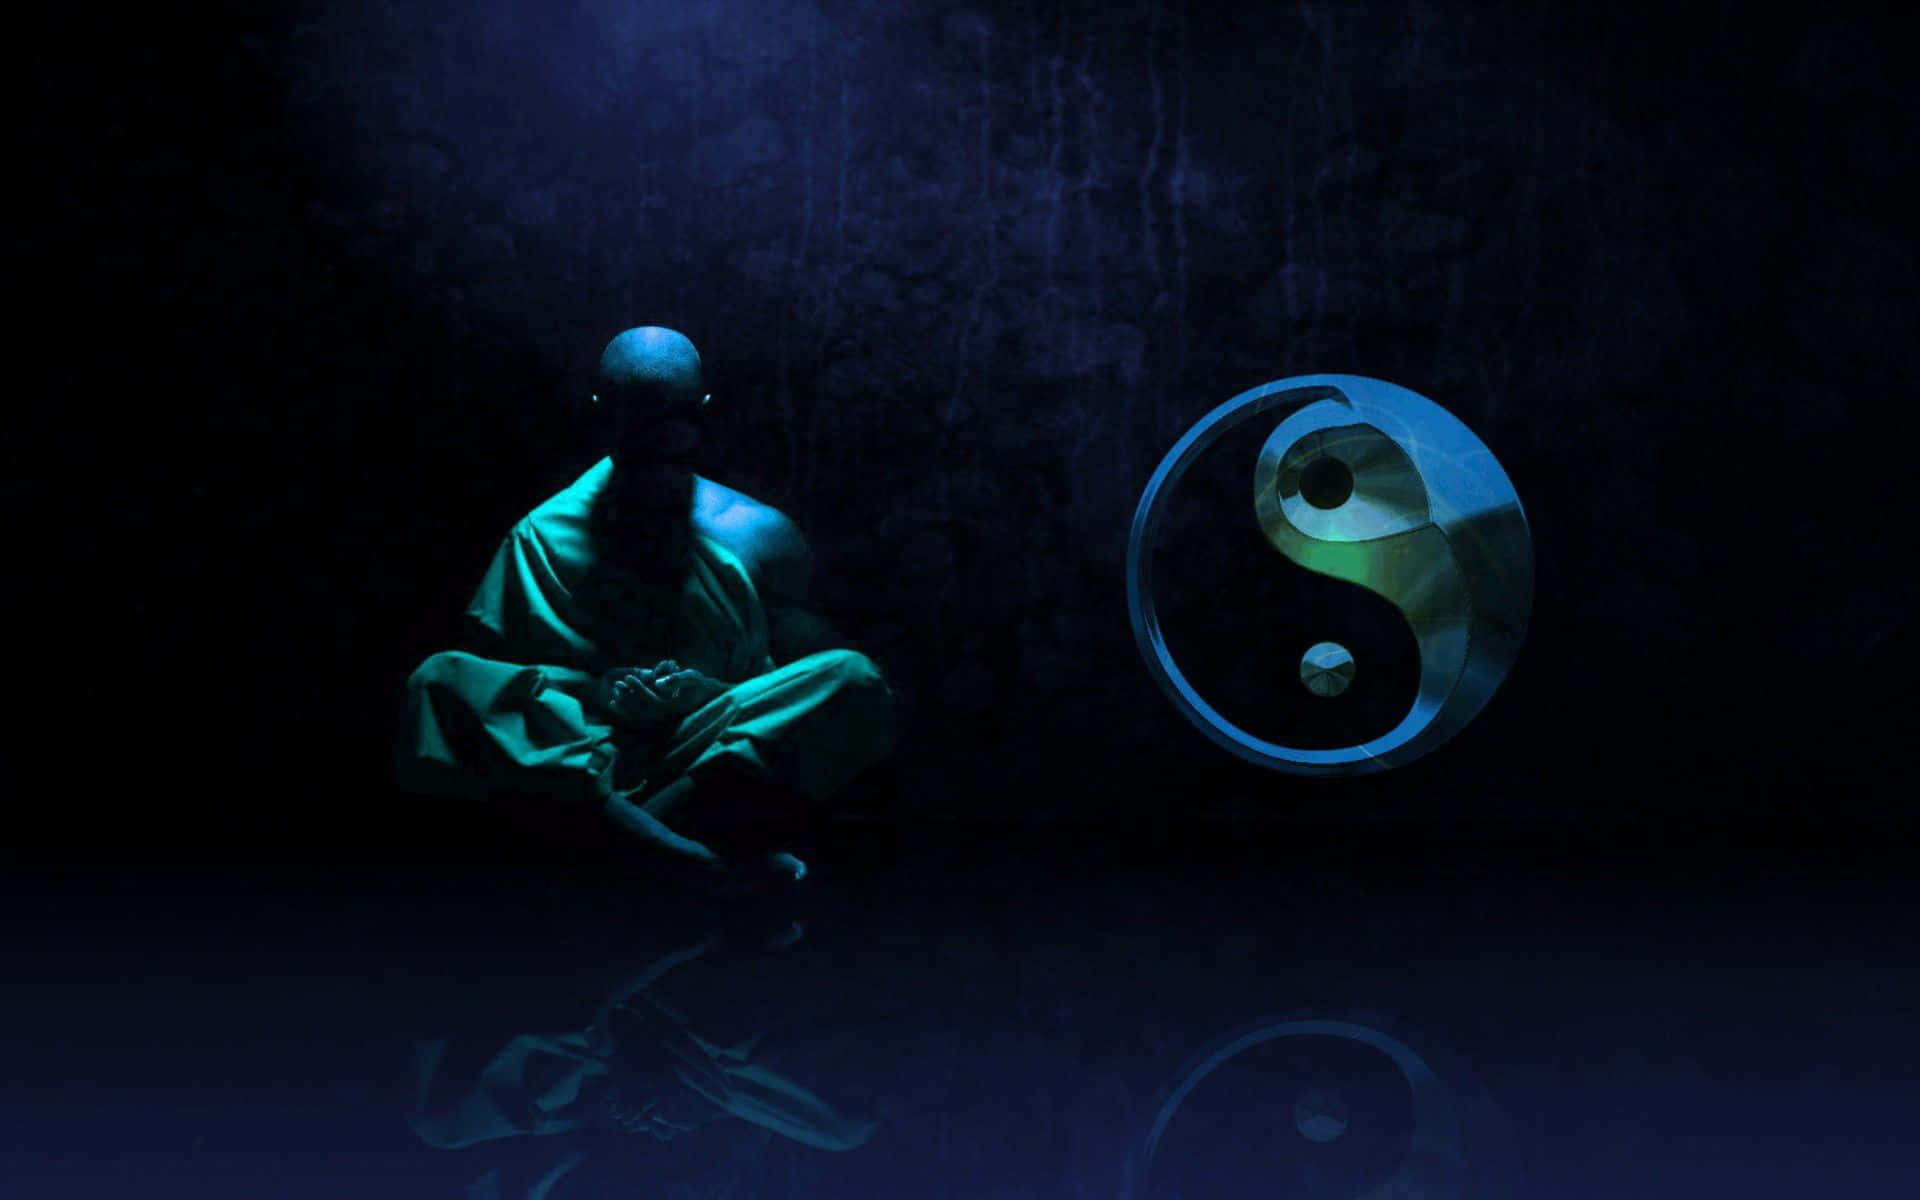 Mönchmeditation Yin Yang Leuchtender Ball Bild.